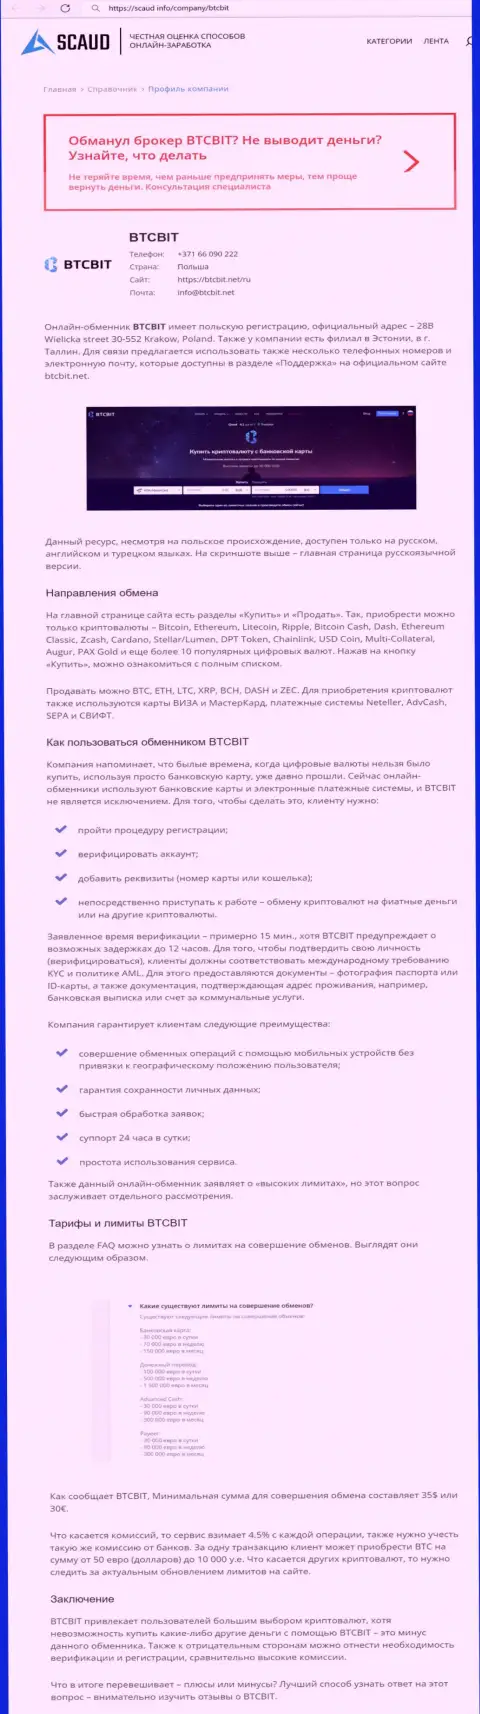 Детальный обзор деятельности обменного пункта БТКБит Нет на веб-портале Scaud Info